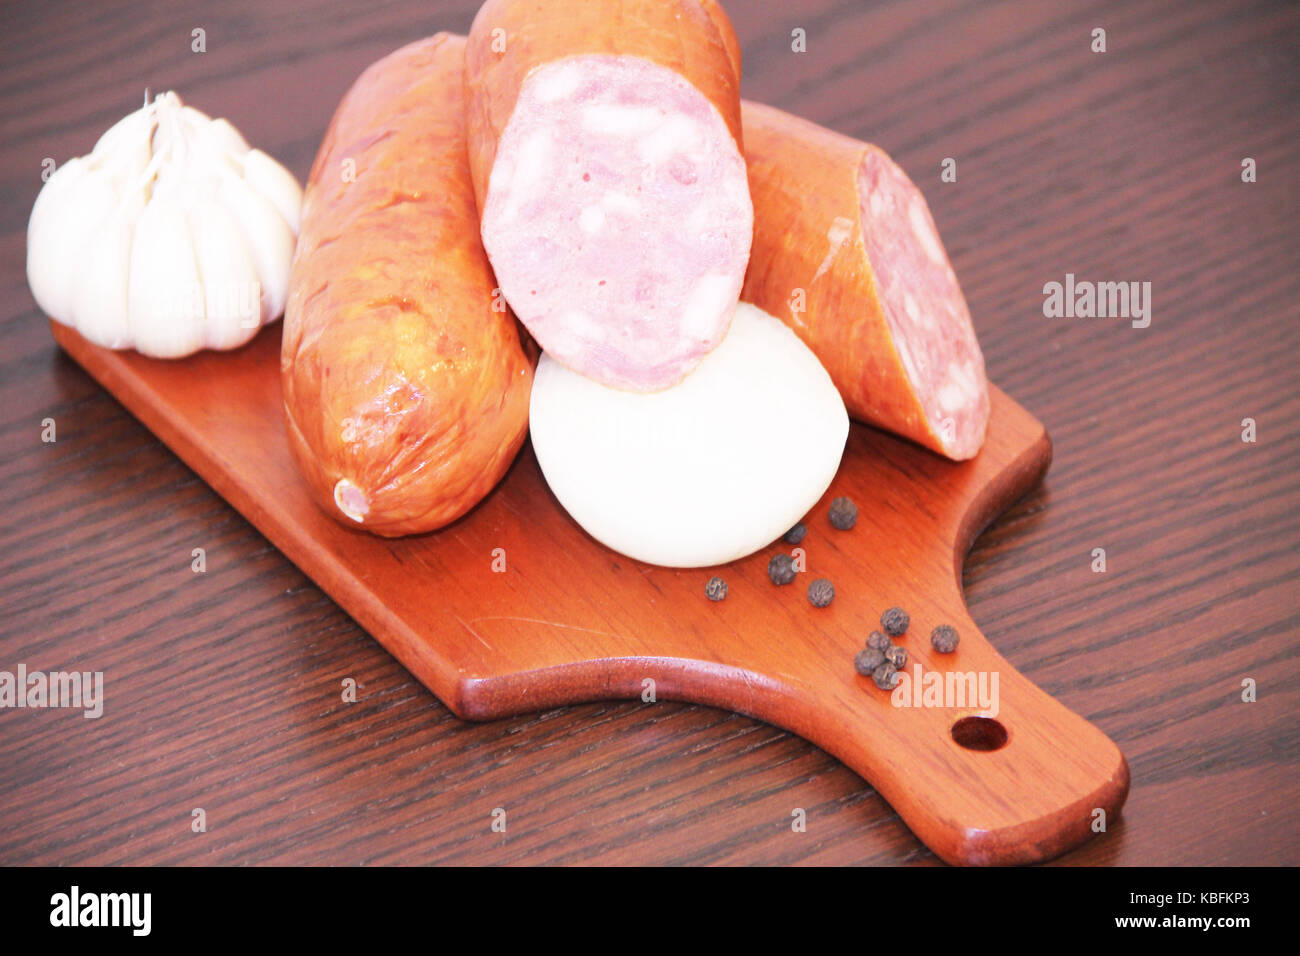 Sausage, pepperoni, onions, garlic, São Paulo, Brazil. Stock Photo